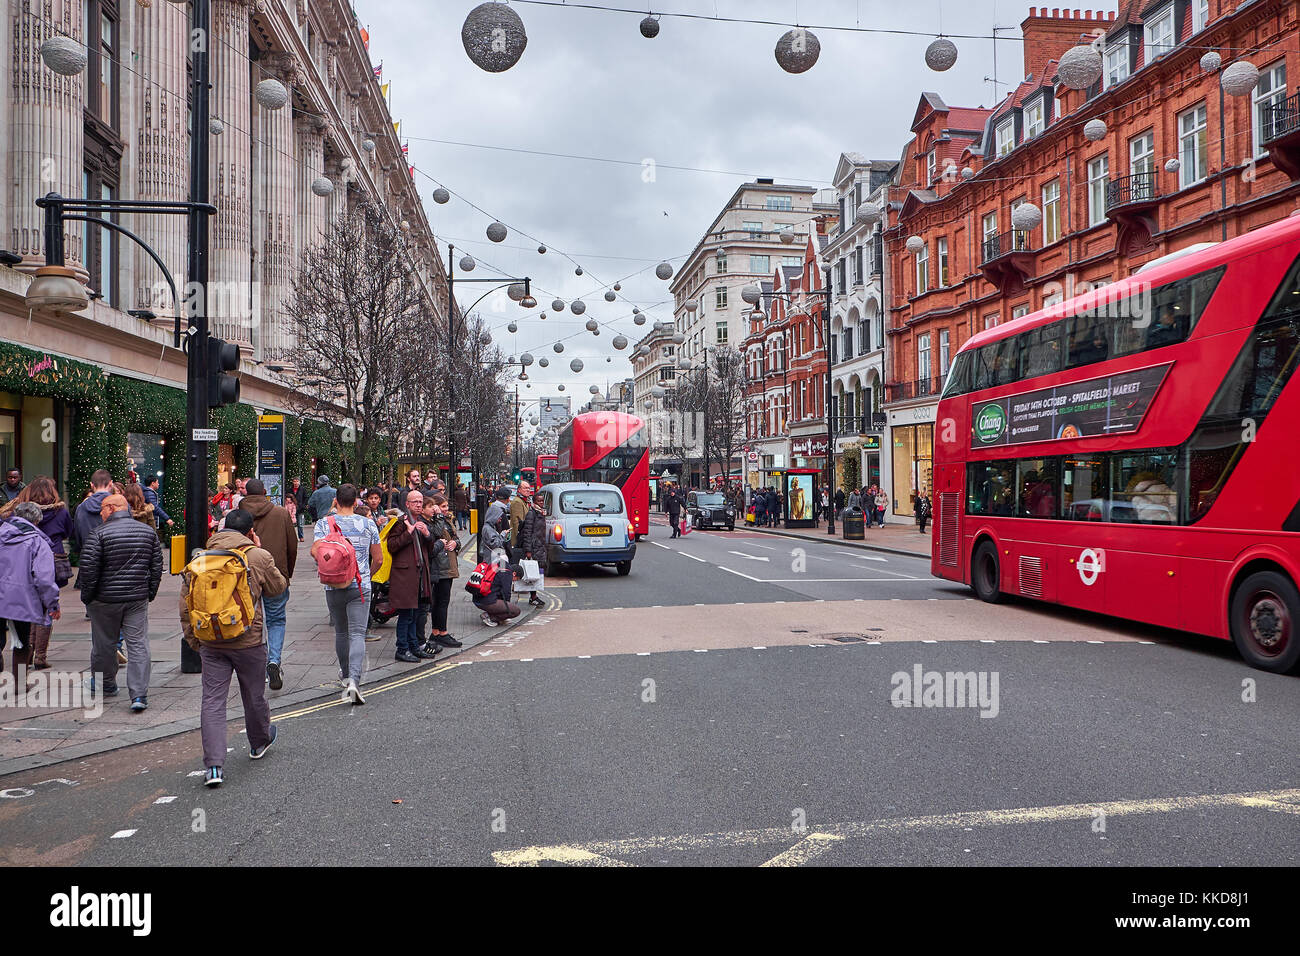 Ciudad de Londres - 23 de diciembre de 2016: calle repleta de autobuses rojos de dos pisos, y muchas personas, en Oxford Street en navidad Foto de stock